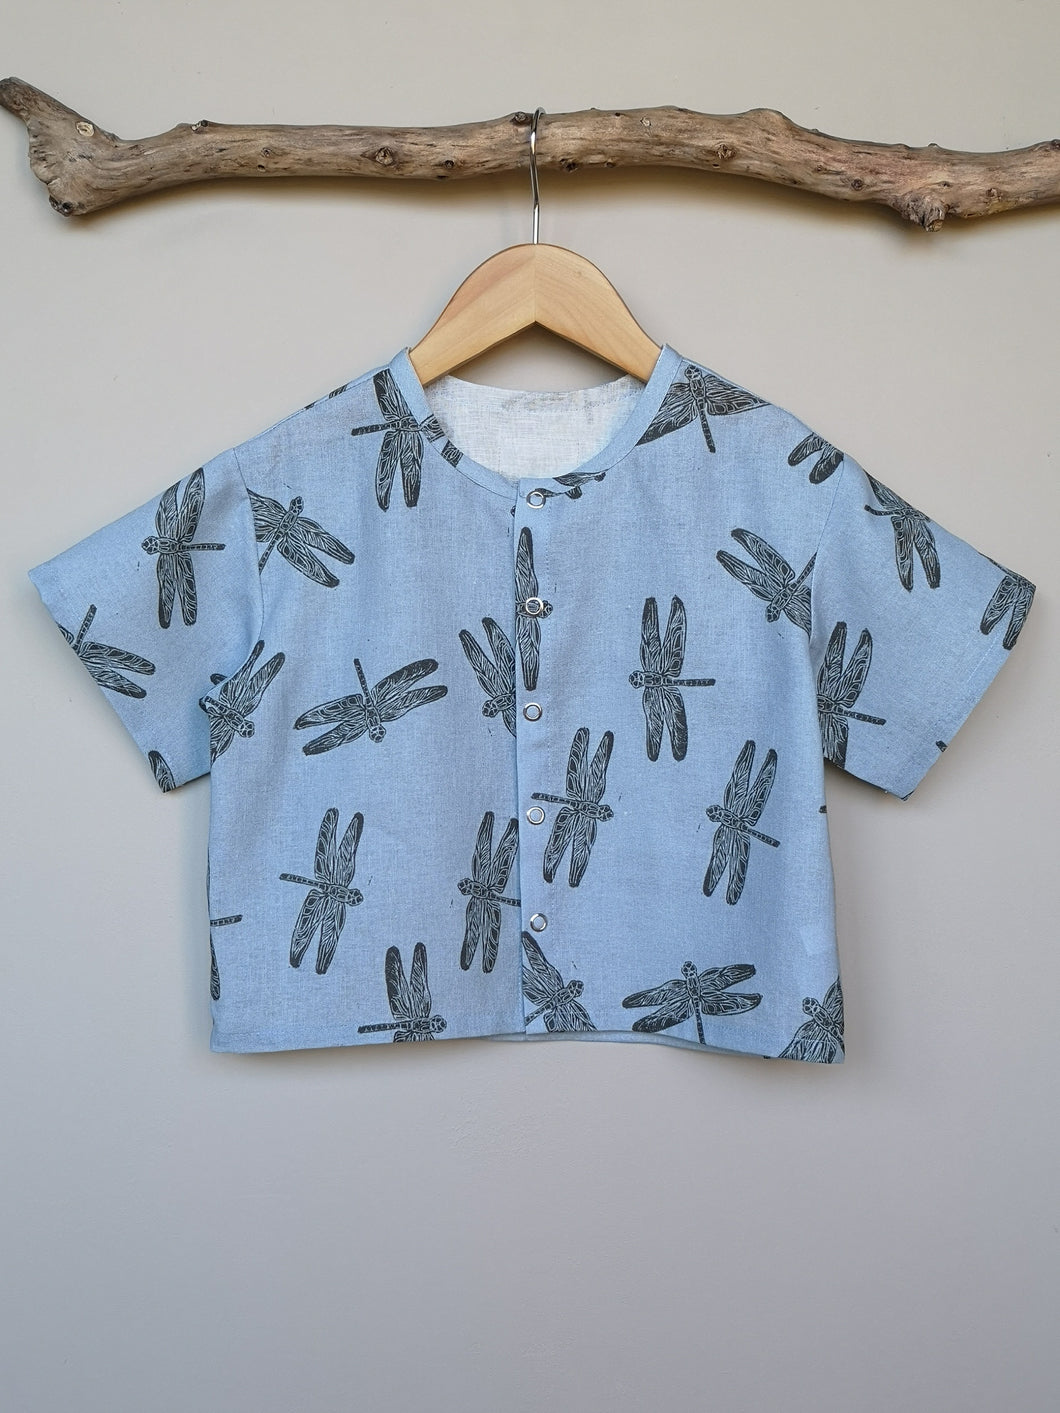 Dragonfly Print Linen/Cotton Toddler & Children's Shirt